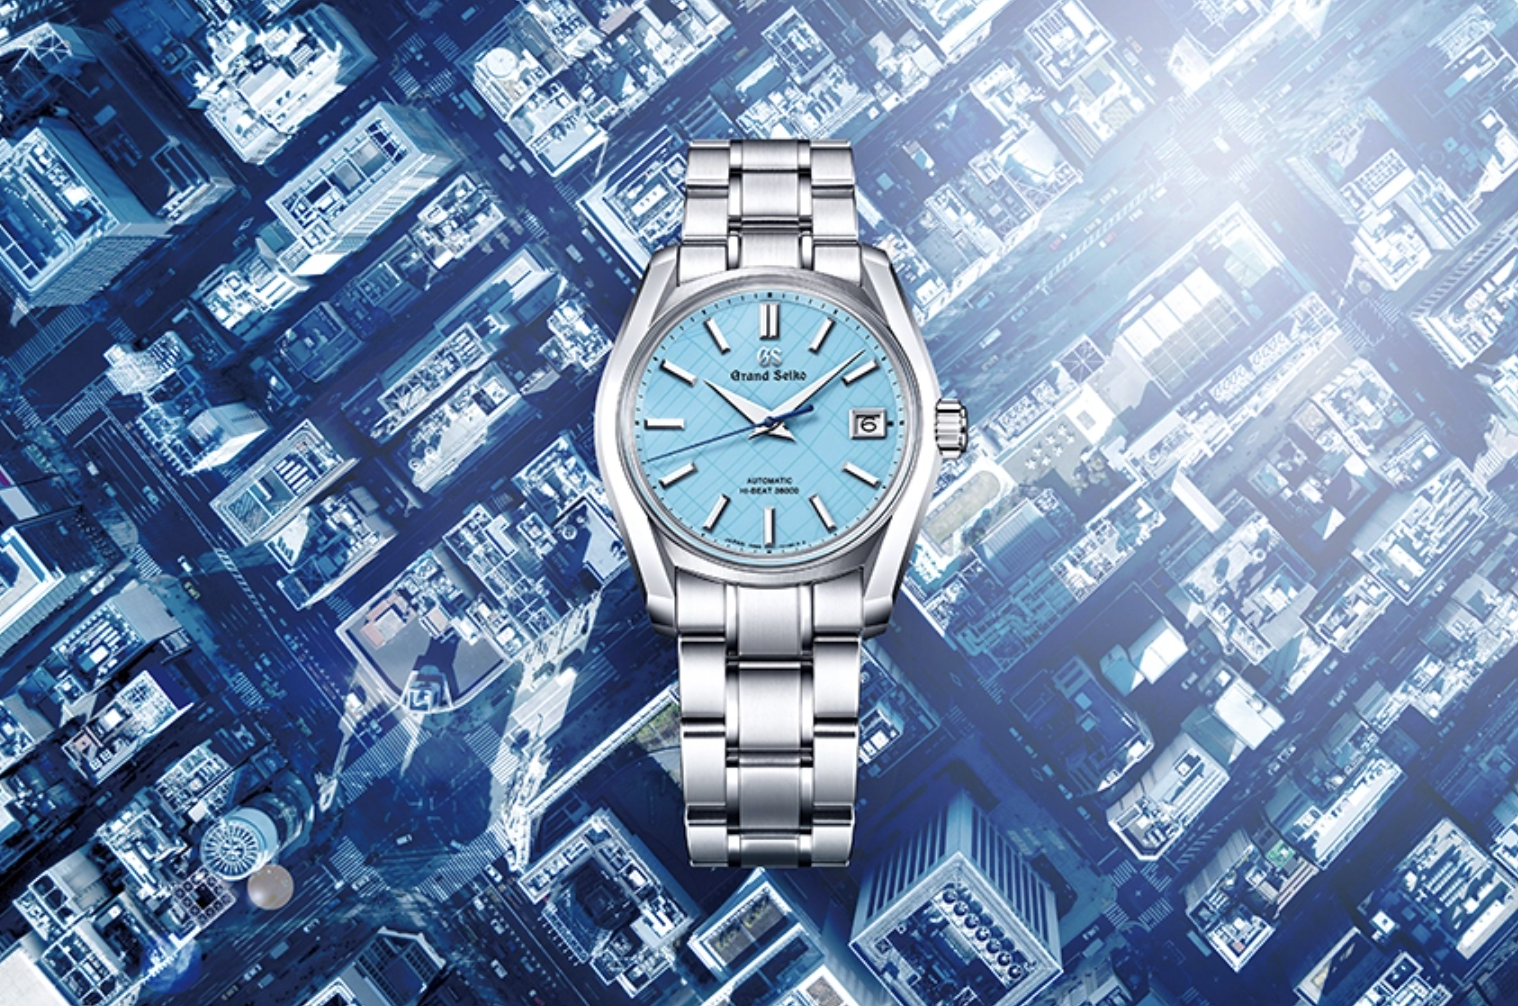 Grand Seiko's New Sky-Blue Watch Honours The Brand's Origins